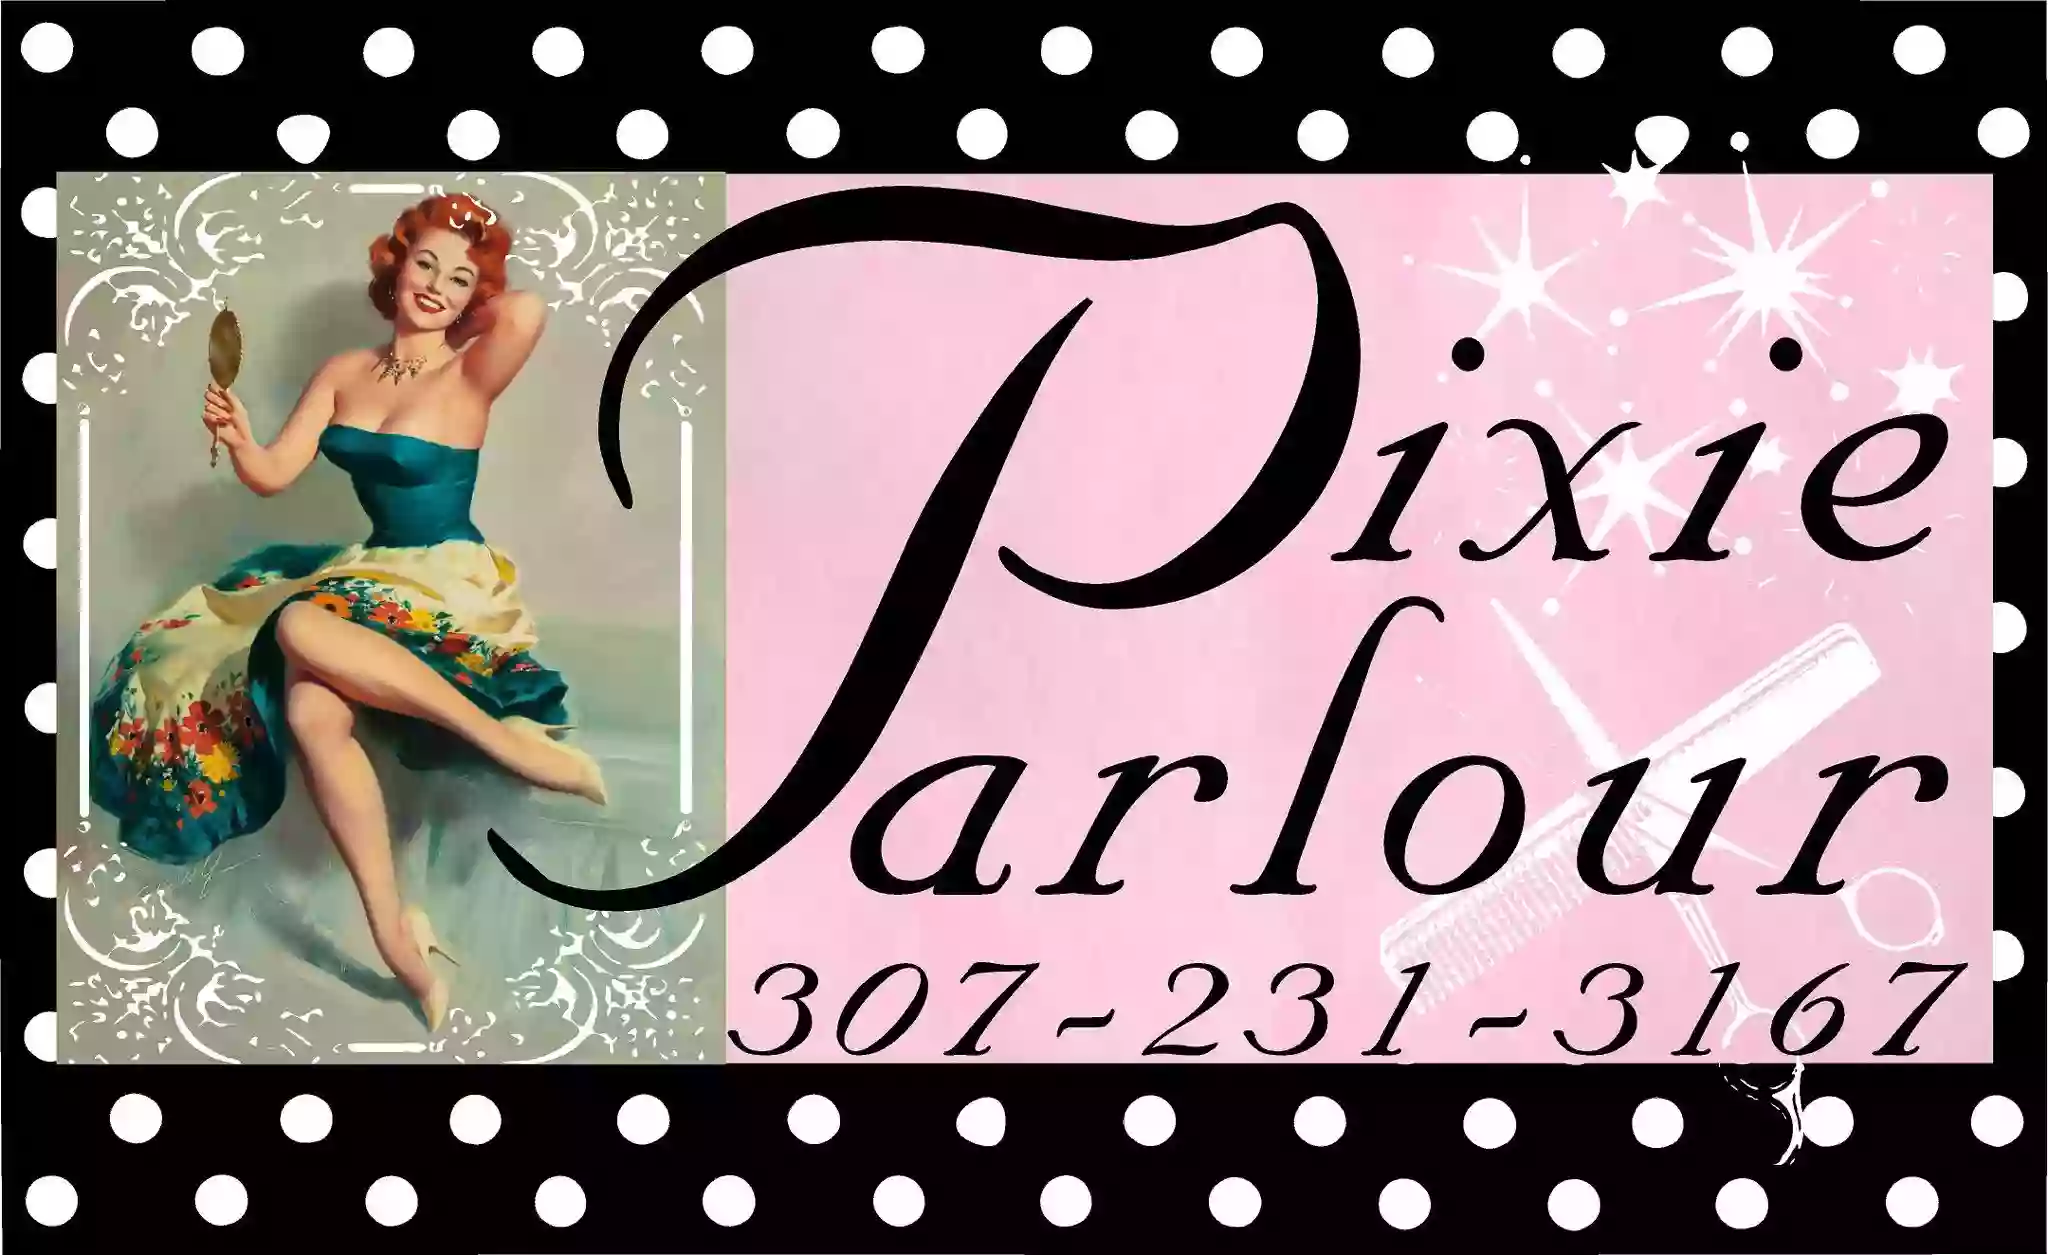 The Pixie Parlour Beauty & Gentlemen’s Cuts